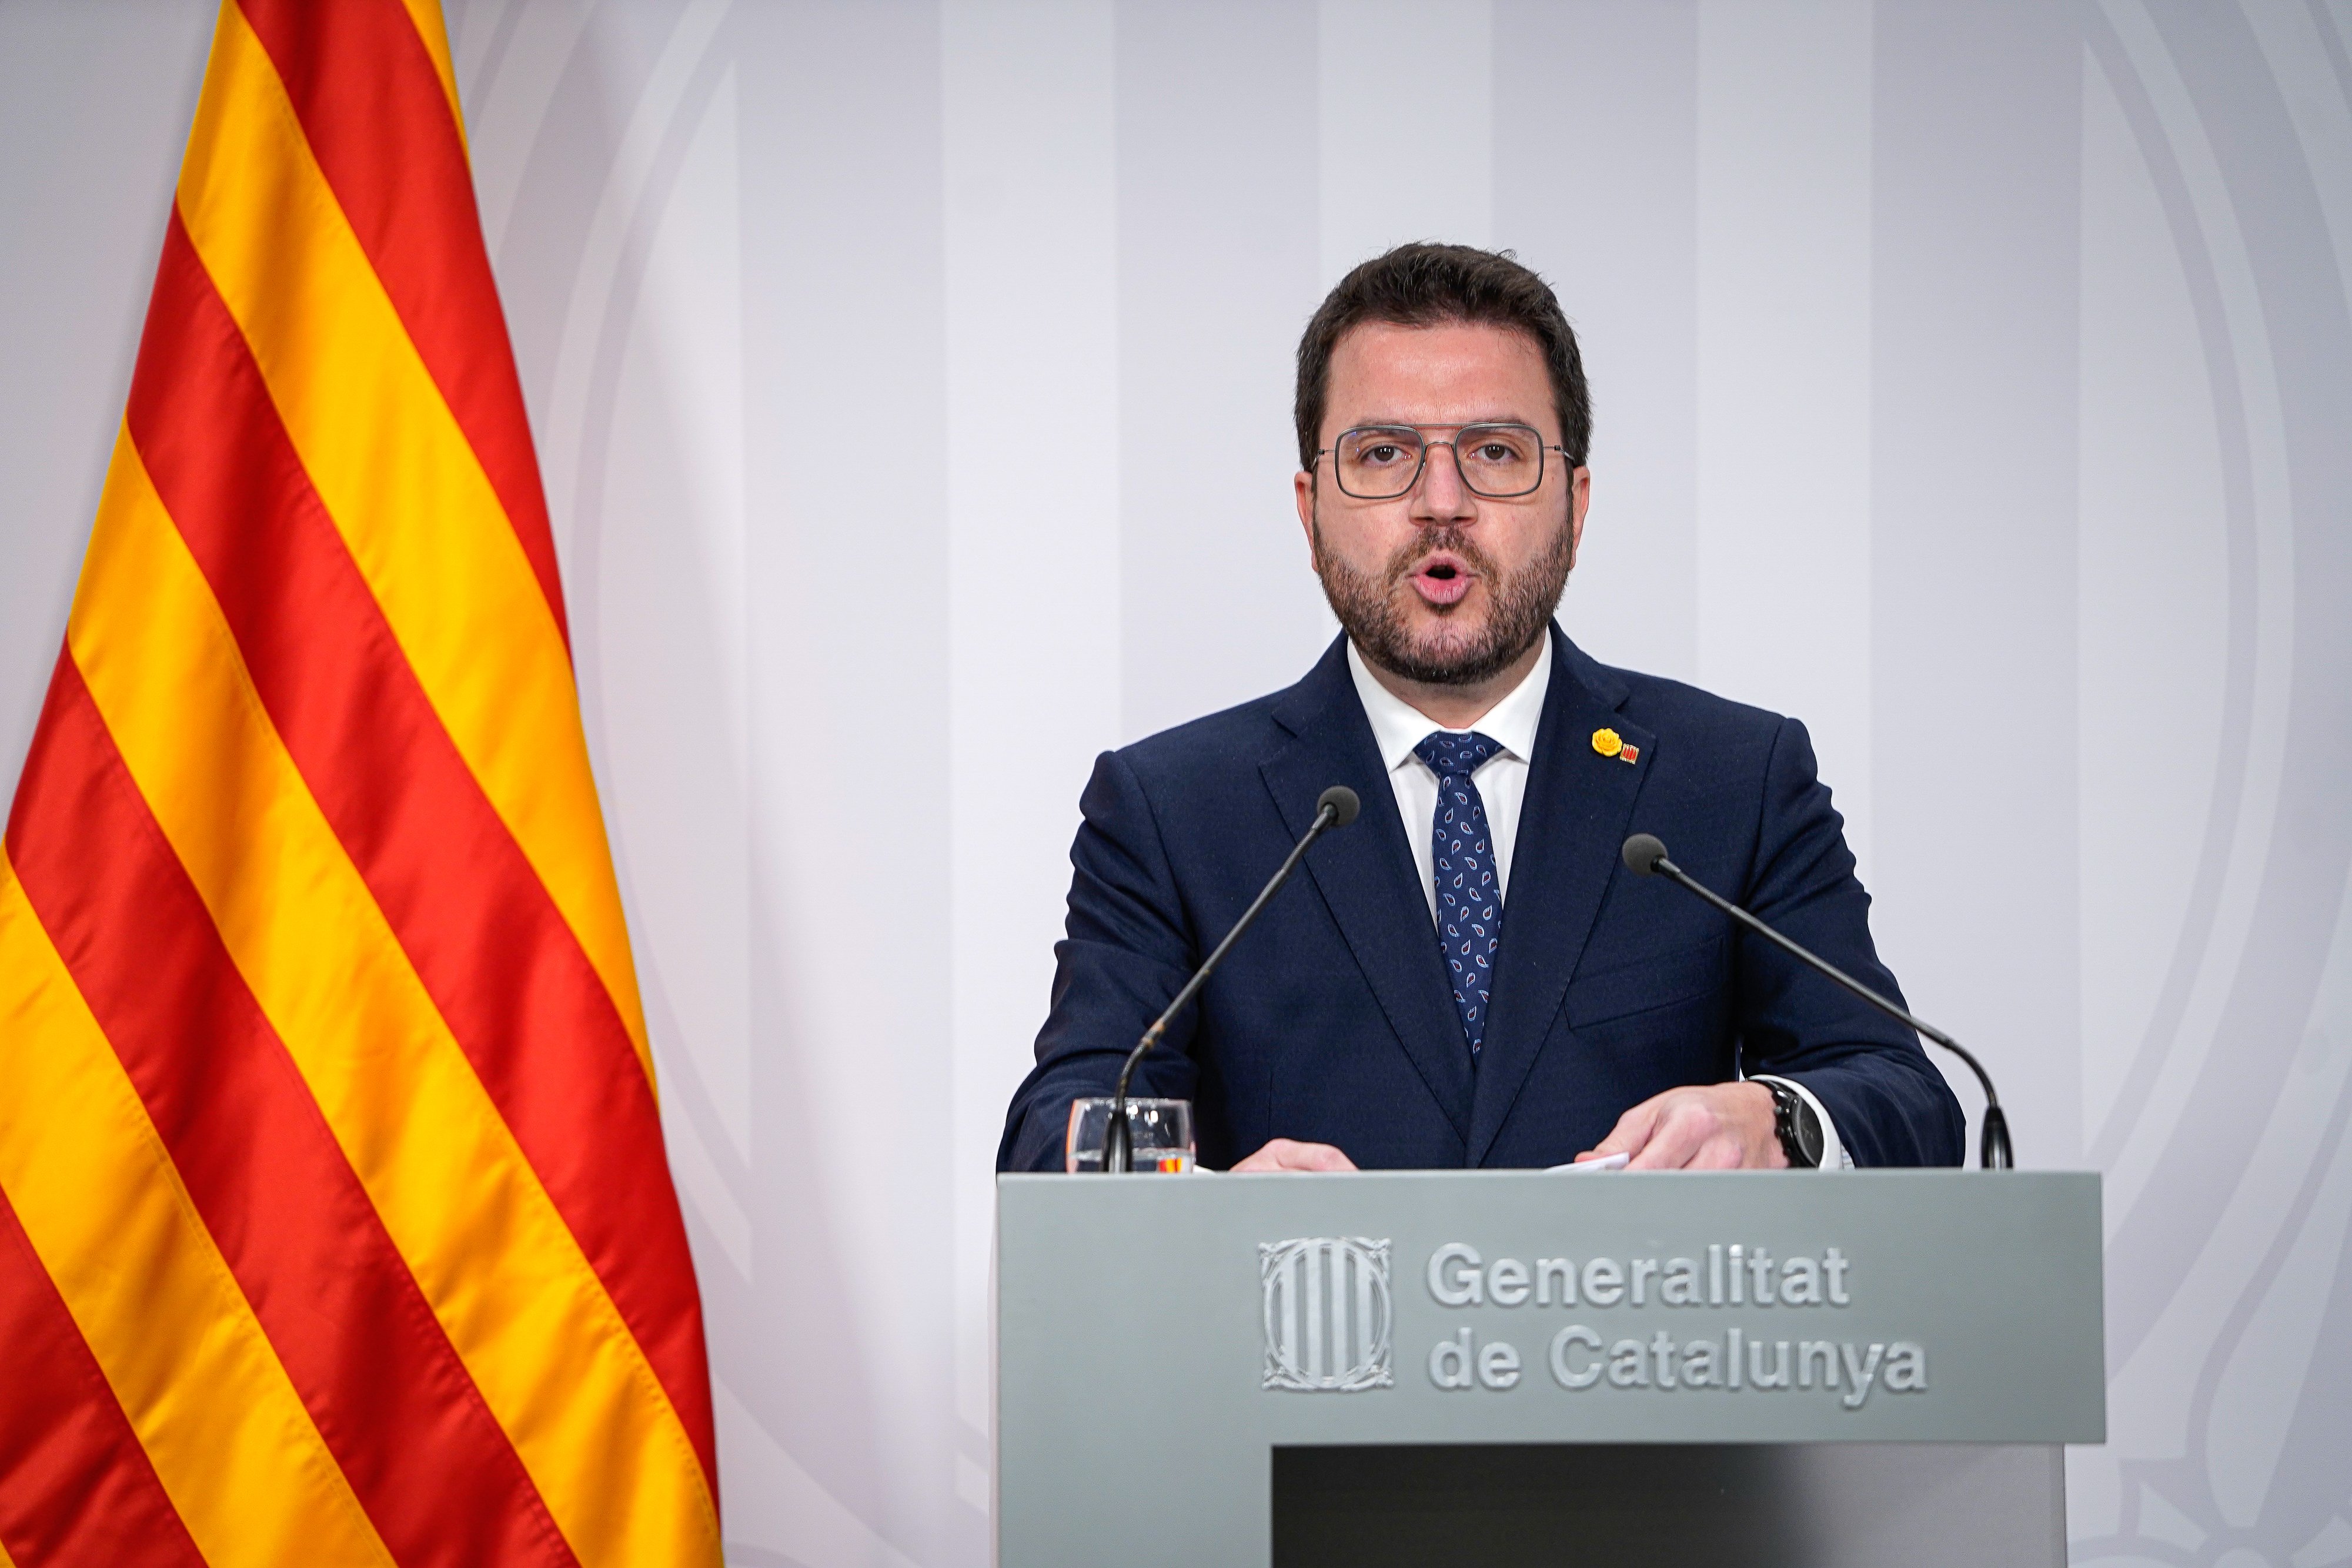 Aragonès defensa l'acord pel català enfront de "desobediències retòriques"